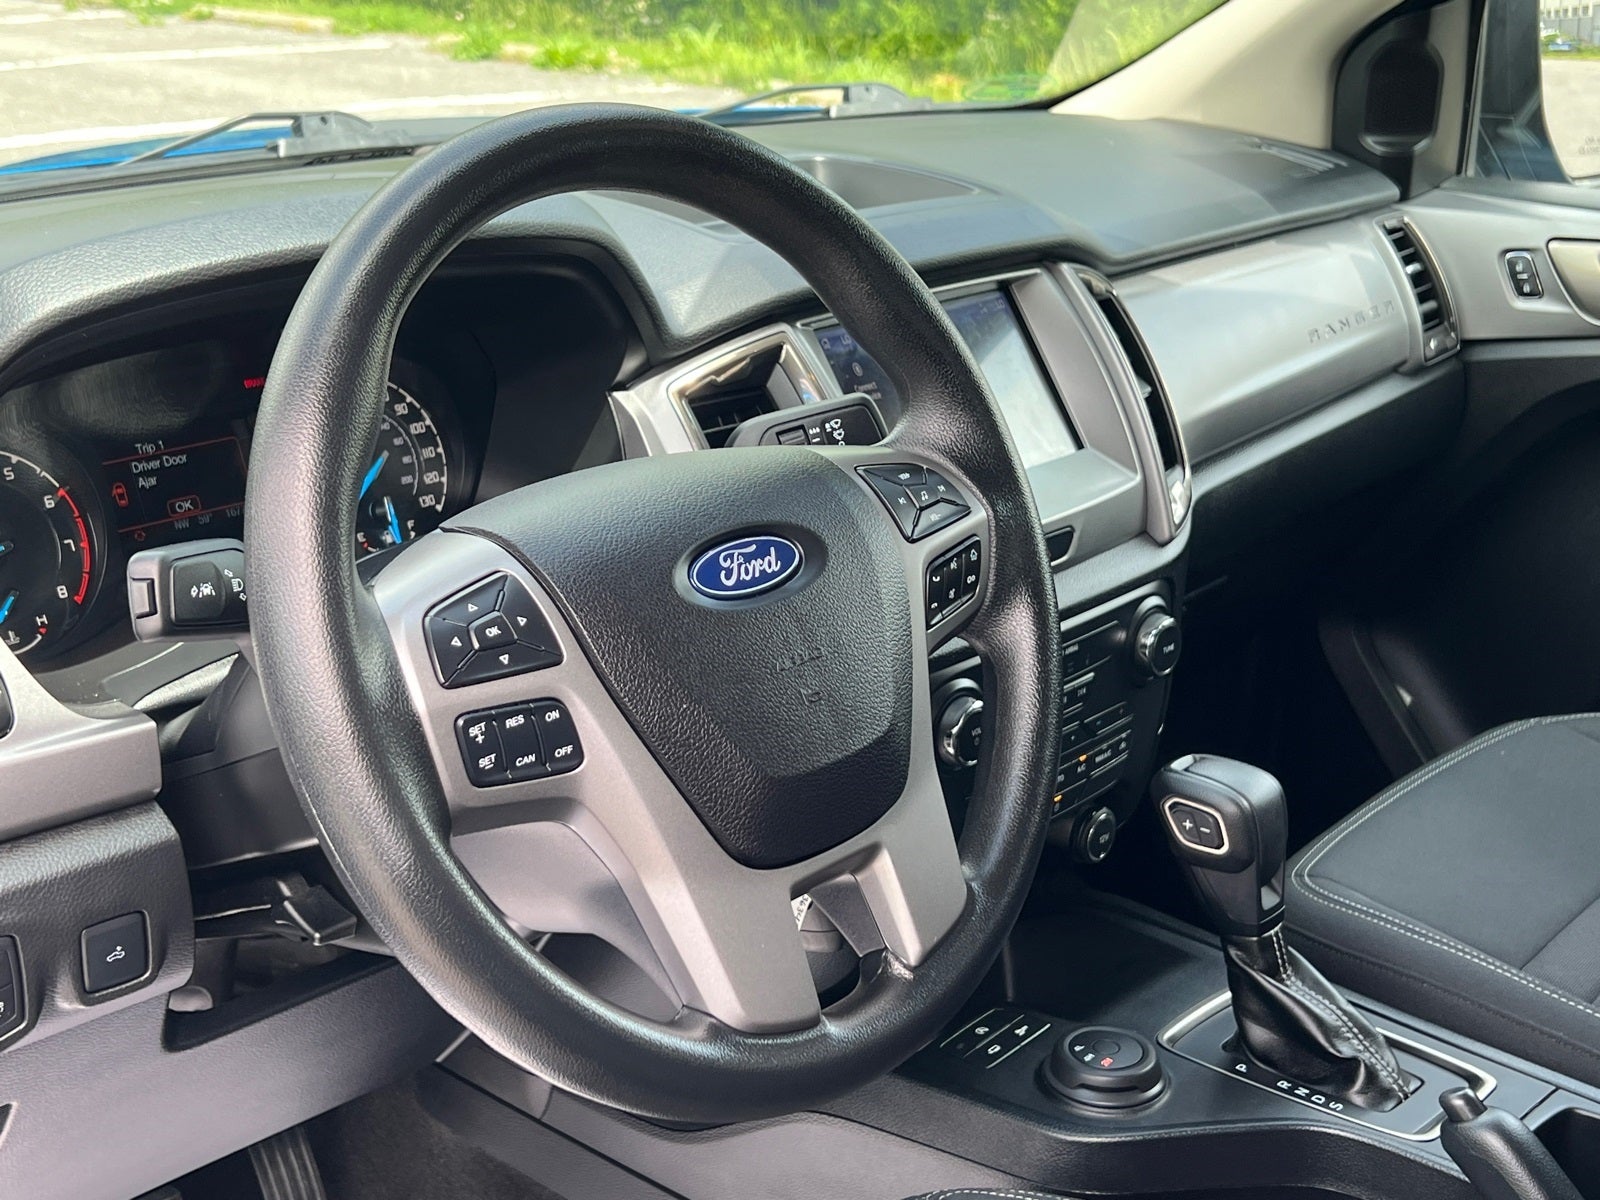 2021 Ford Ranger XLT